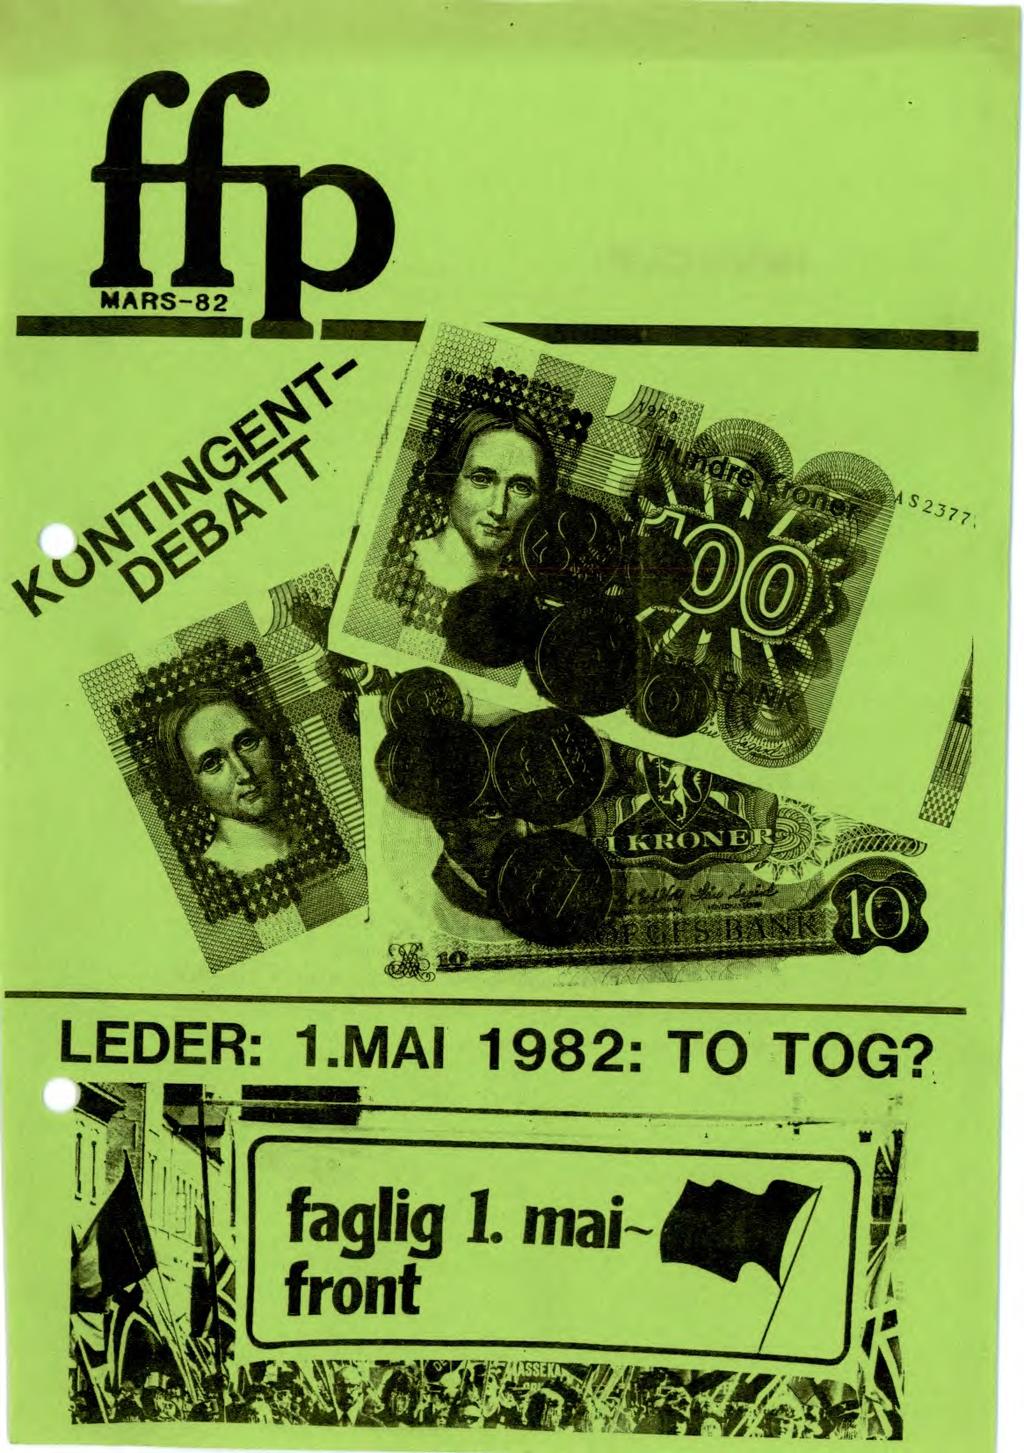 /It LEDER: I MAI 1982: